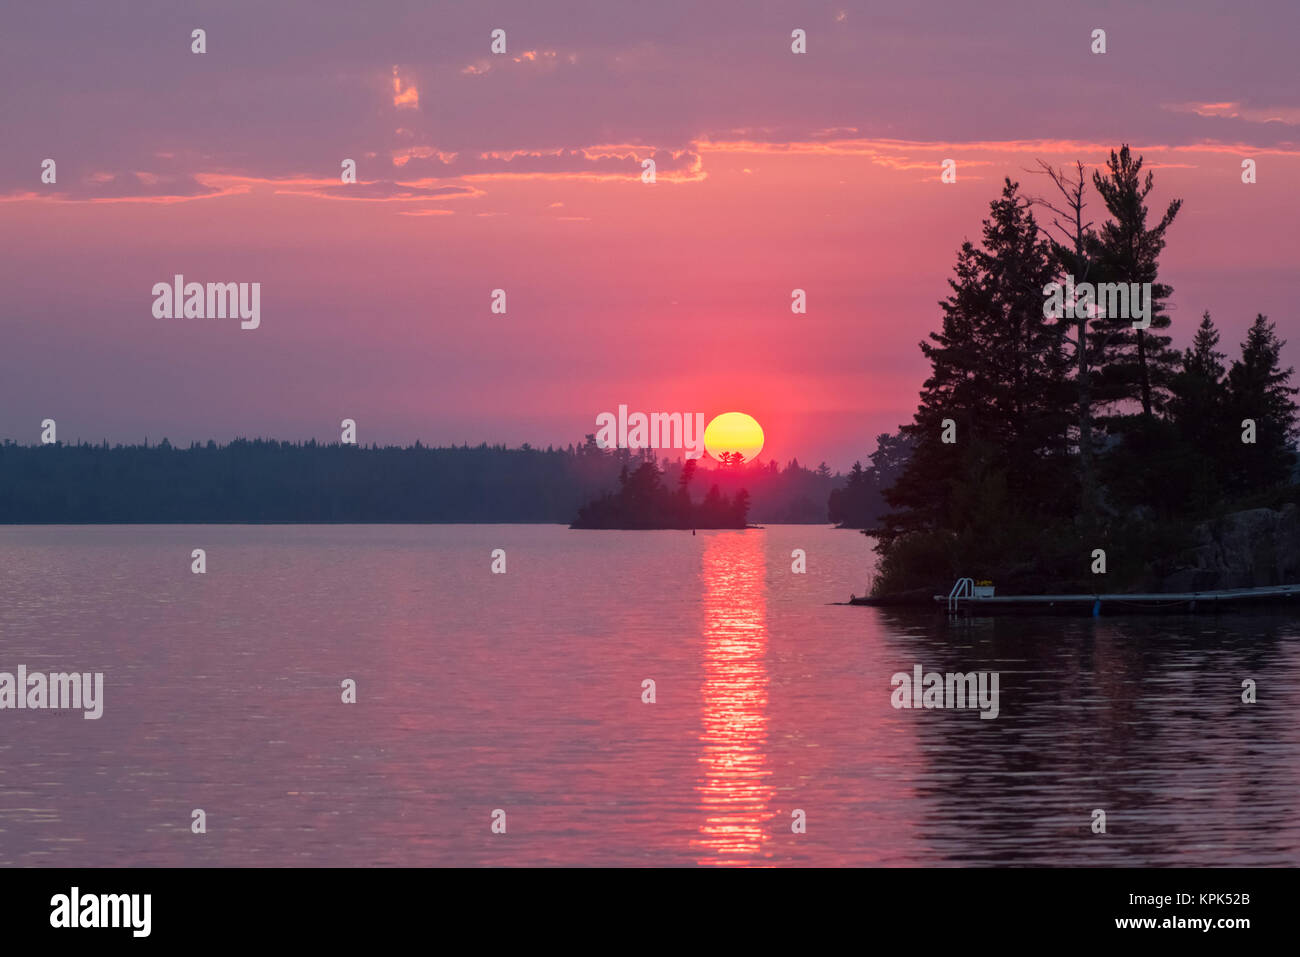 Coucher de soleil spectaculaire avec un soleil doré et ciel rose au-dessus d'un lac, le lac des Bois, Ontario, Canada Banque D'Images